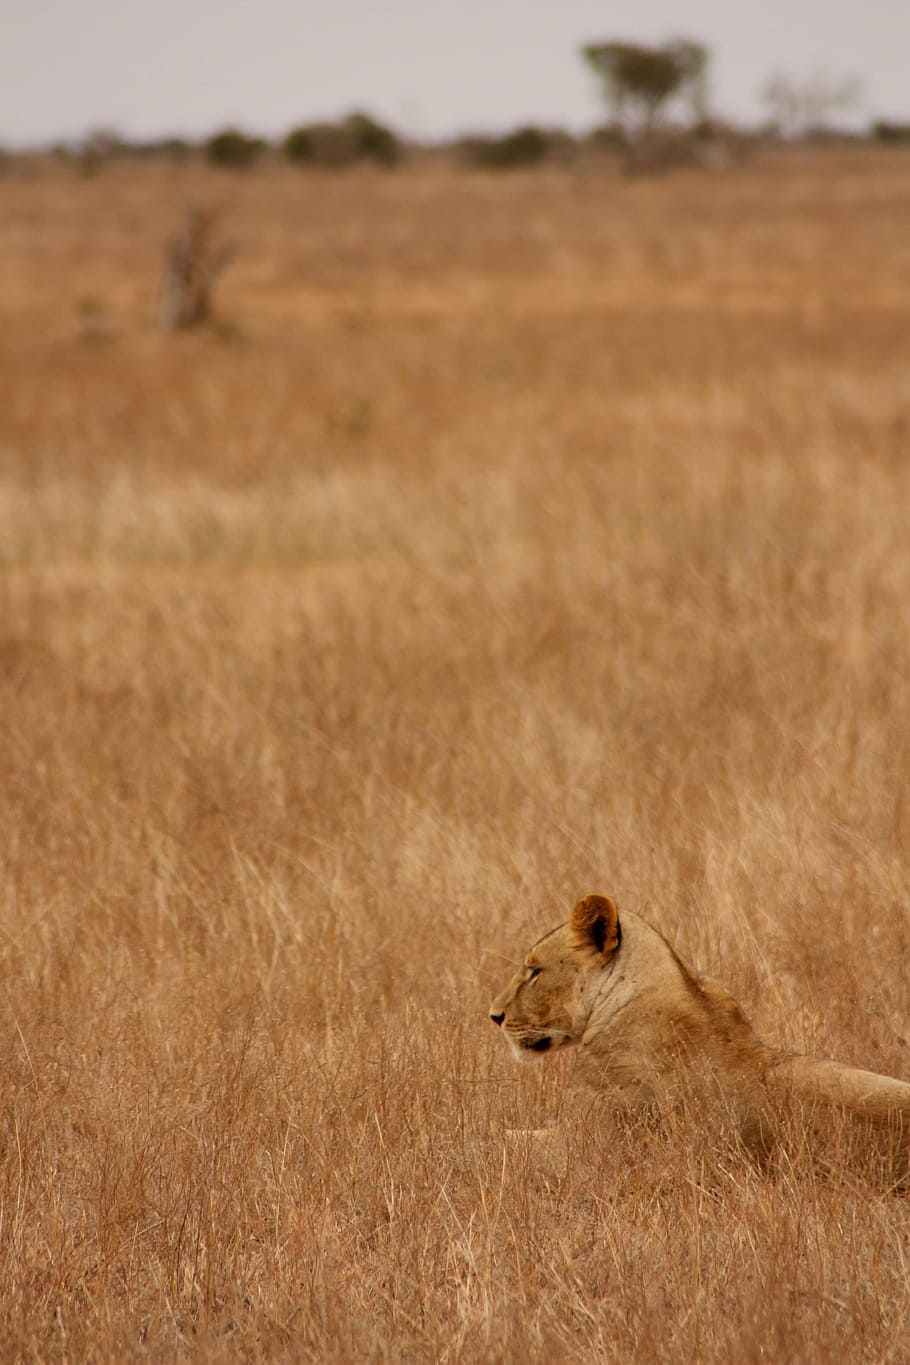 León, Animal, Familia, Salvaje, Mamífero, safari, África, viaje, Kenia, aventura